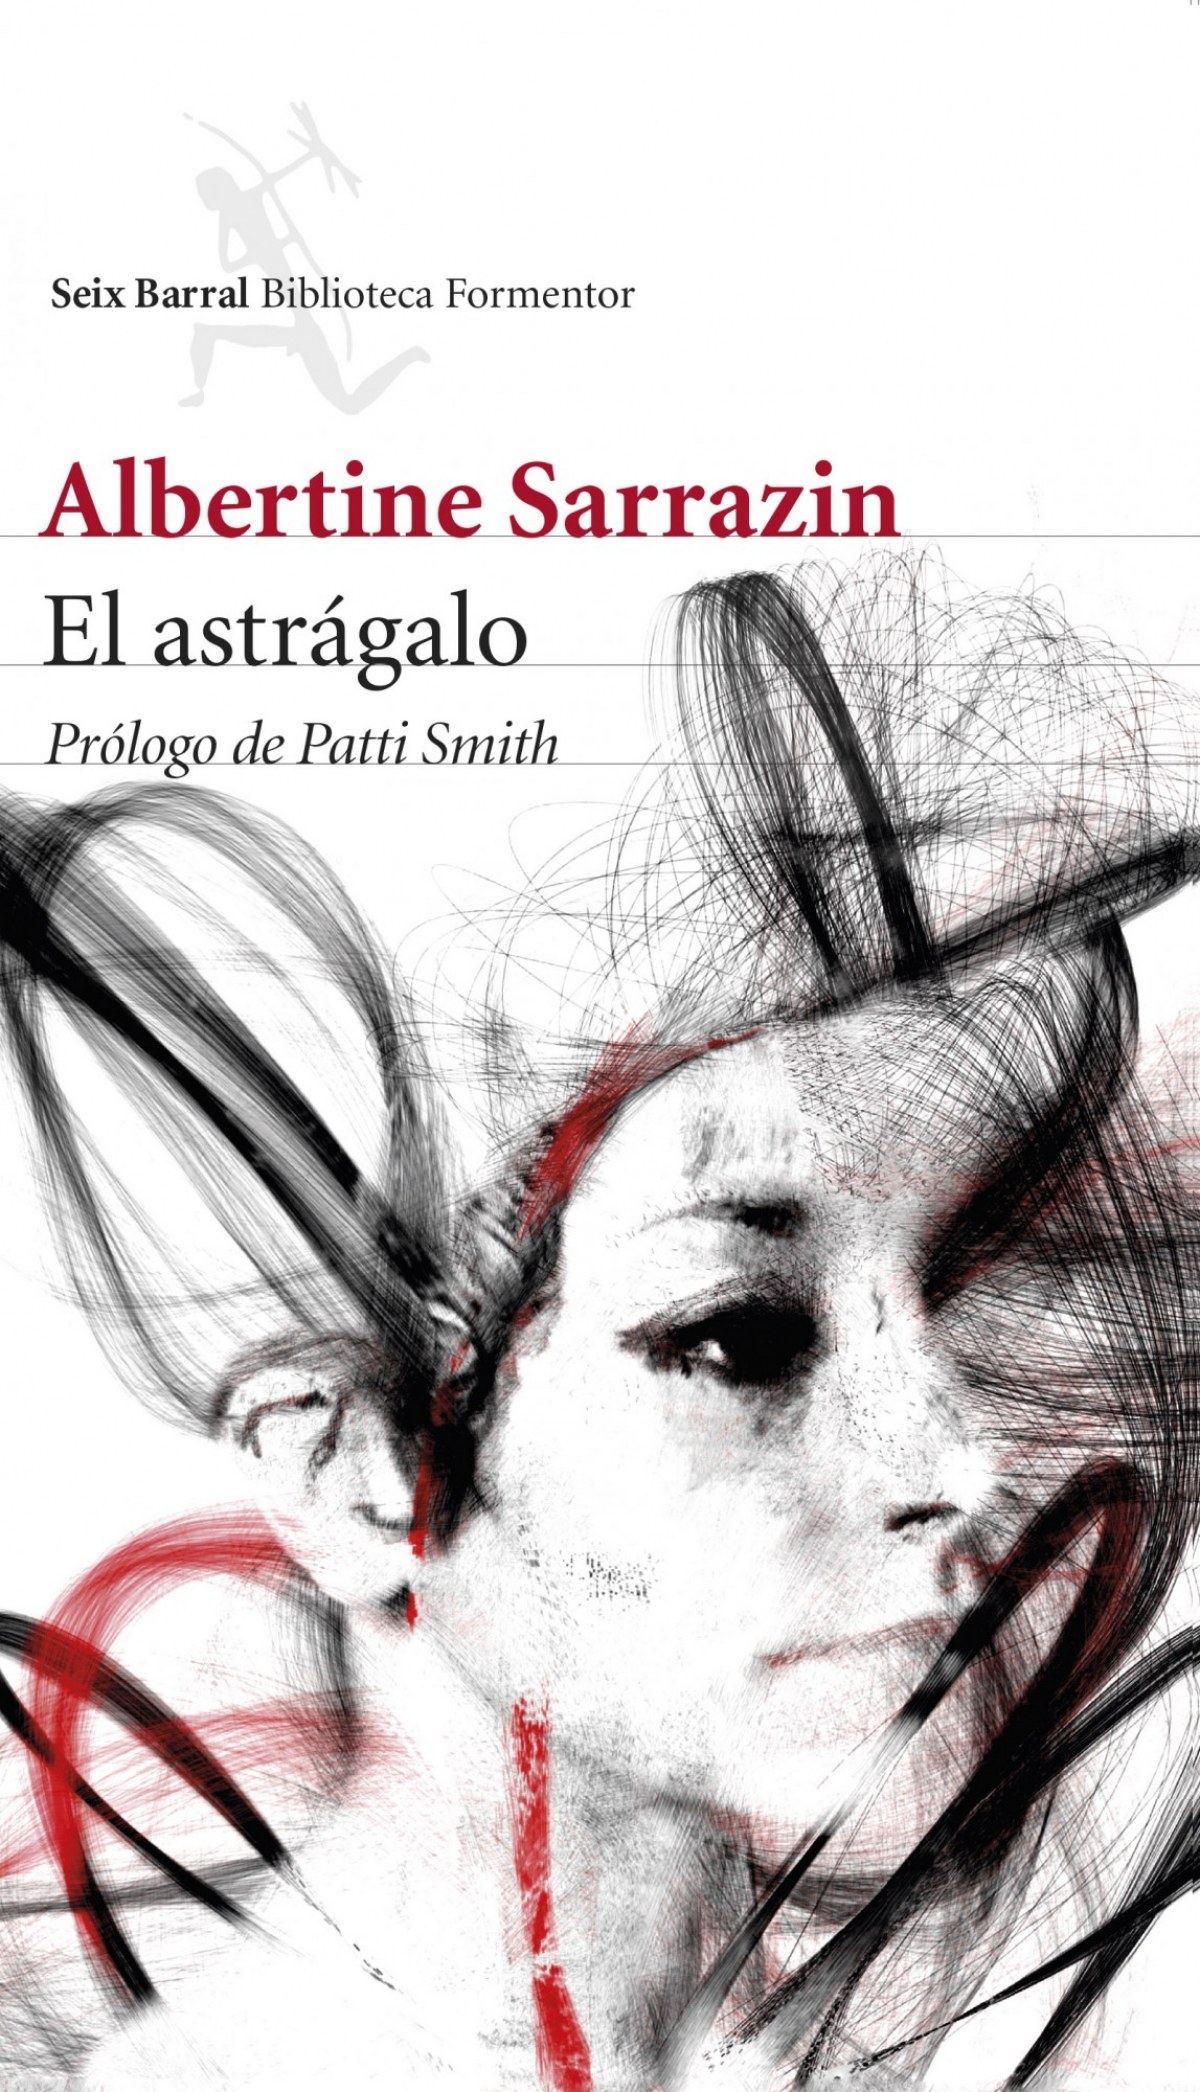 El astragalo - Albertine Sarrazin